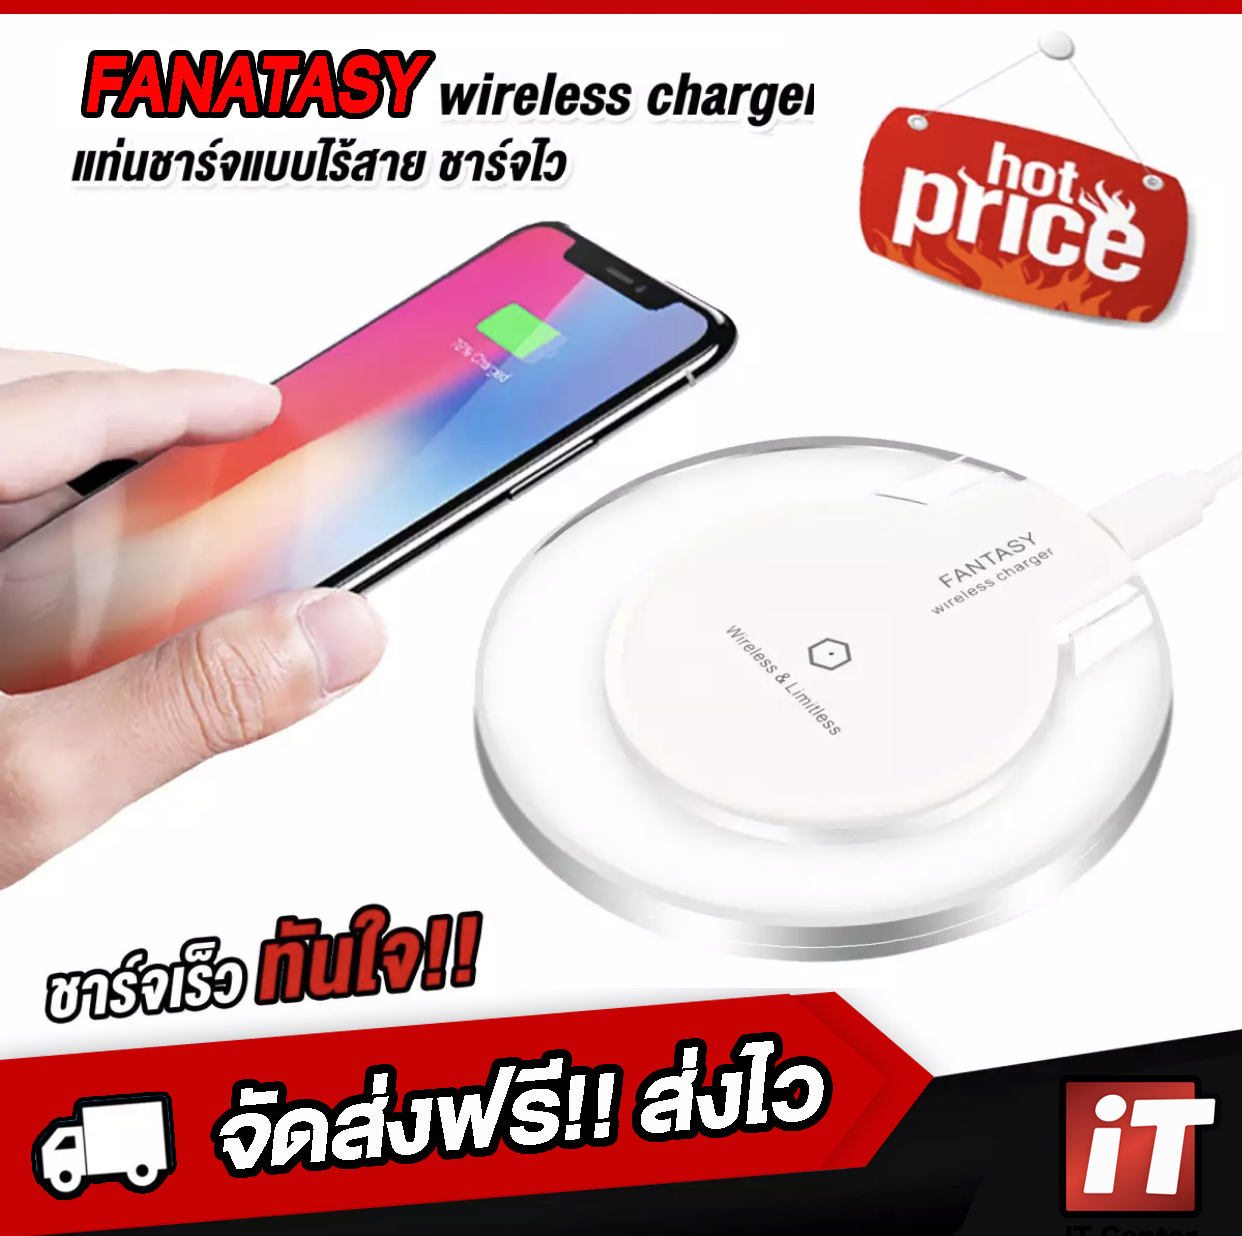 ? แท่นชาร์จไร้สาย ? Fantasy Crystal Wireless Charger Qi Standard รองรับใช้งานกับ Smartphone รุ่นที่รองรับชาร์จไร้สาย